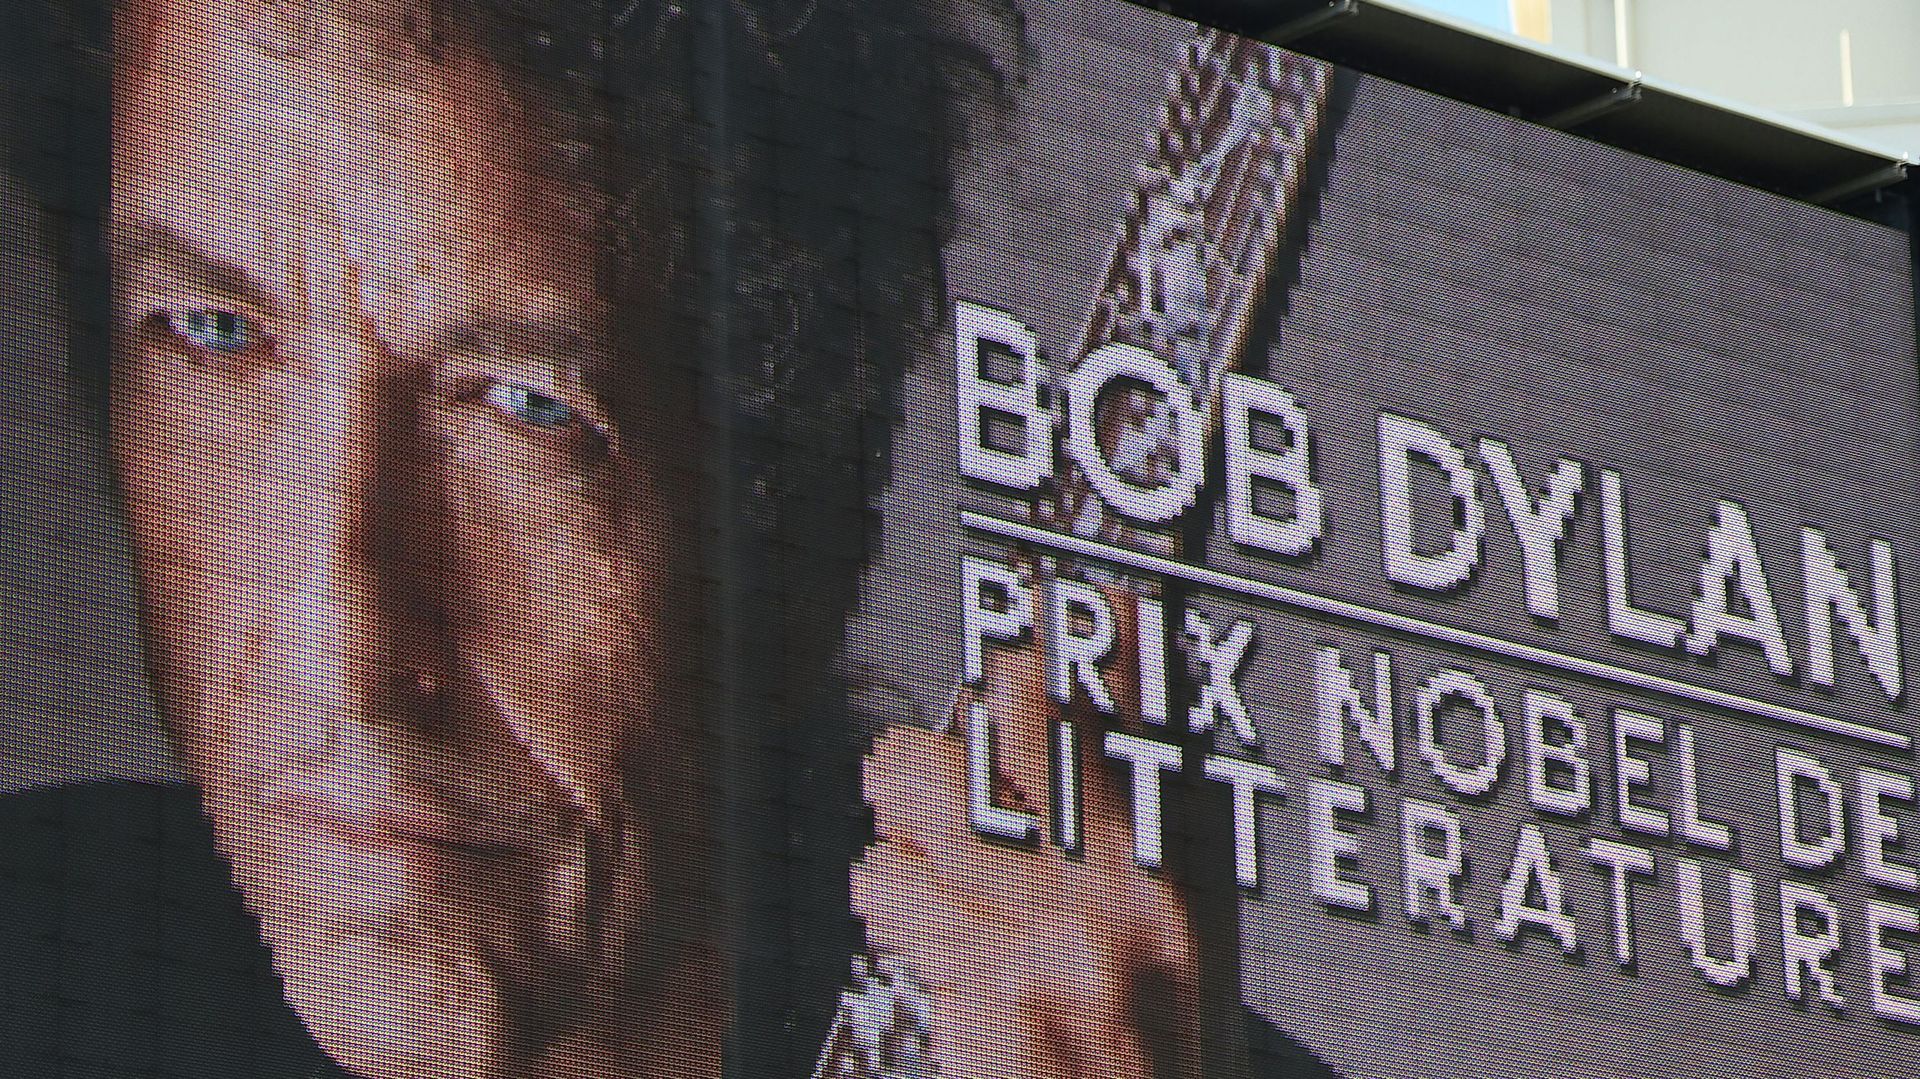  Une guitare emblématique du son électrique de Bob Dylan vendue 495.000 dollars